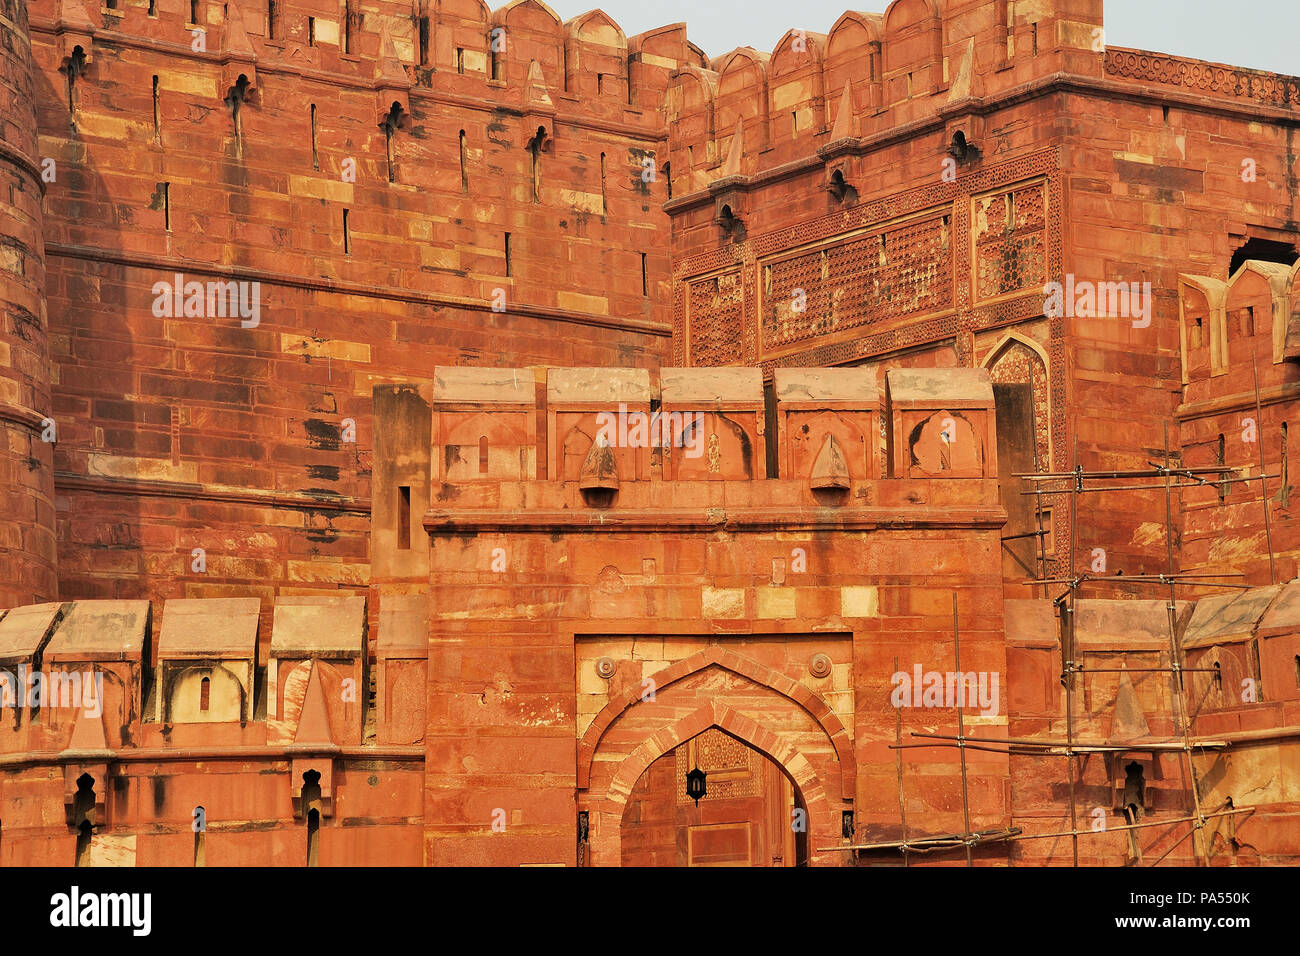 Vista parziale delle mura fortificate del forte Agra (rosso), Agra, Uttar Pradesh, India Foto Stock